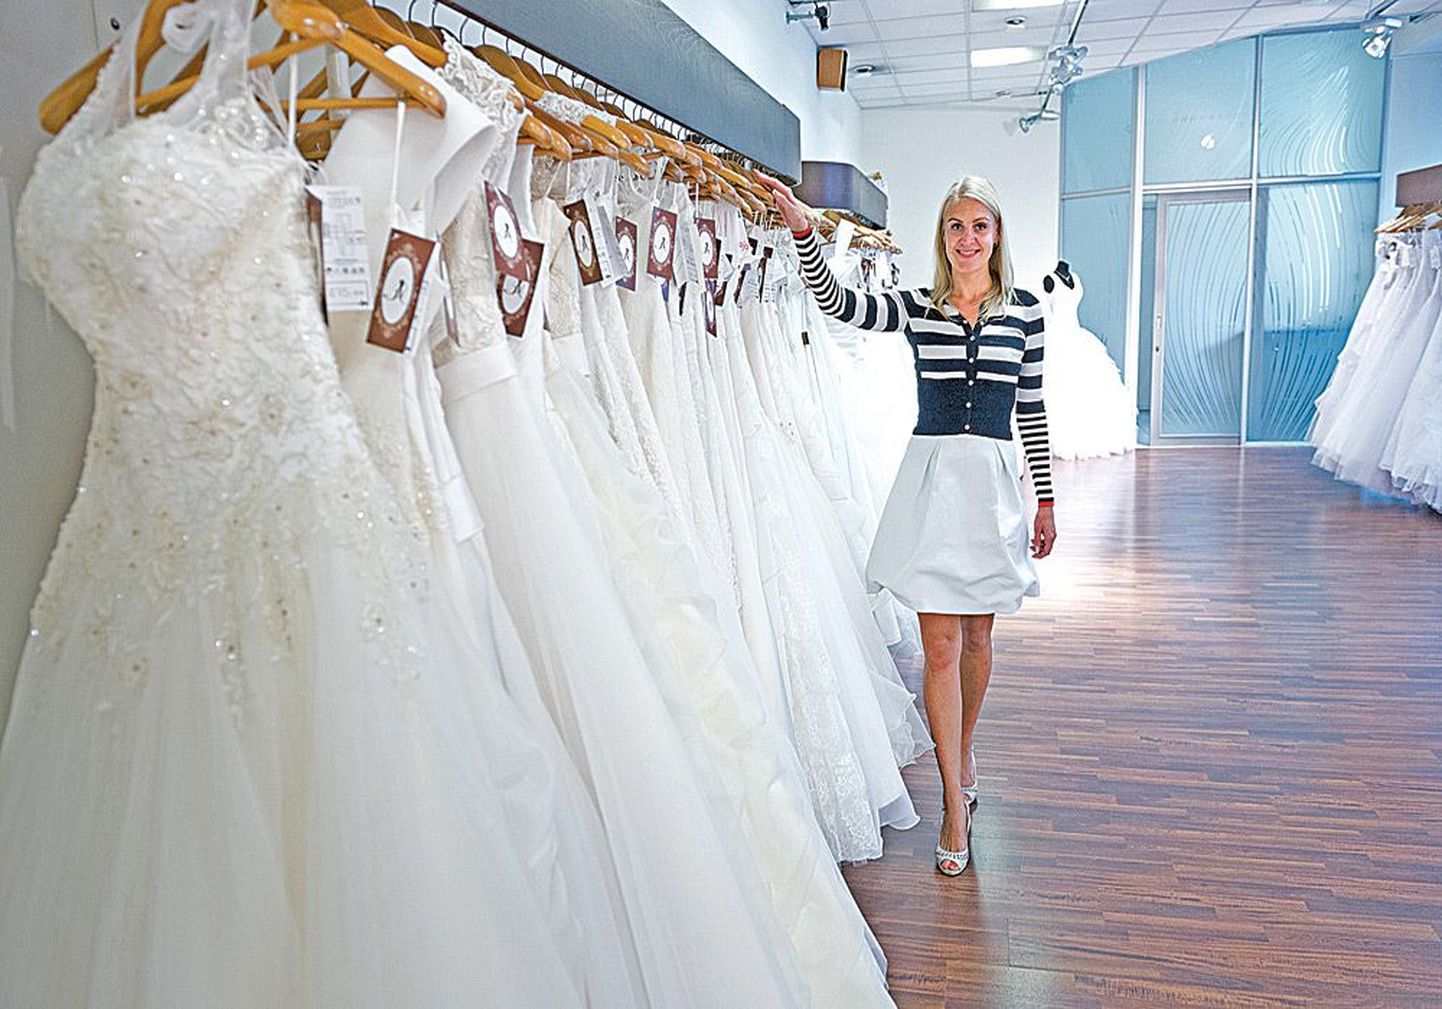 По словам Ксении Емельяновой, в магазине свадебных платьев тоже встречаются постоянные клиенты.